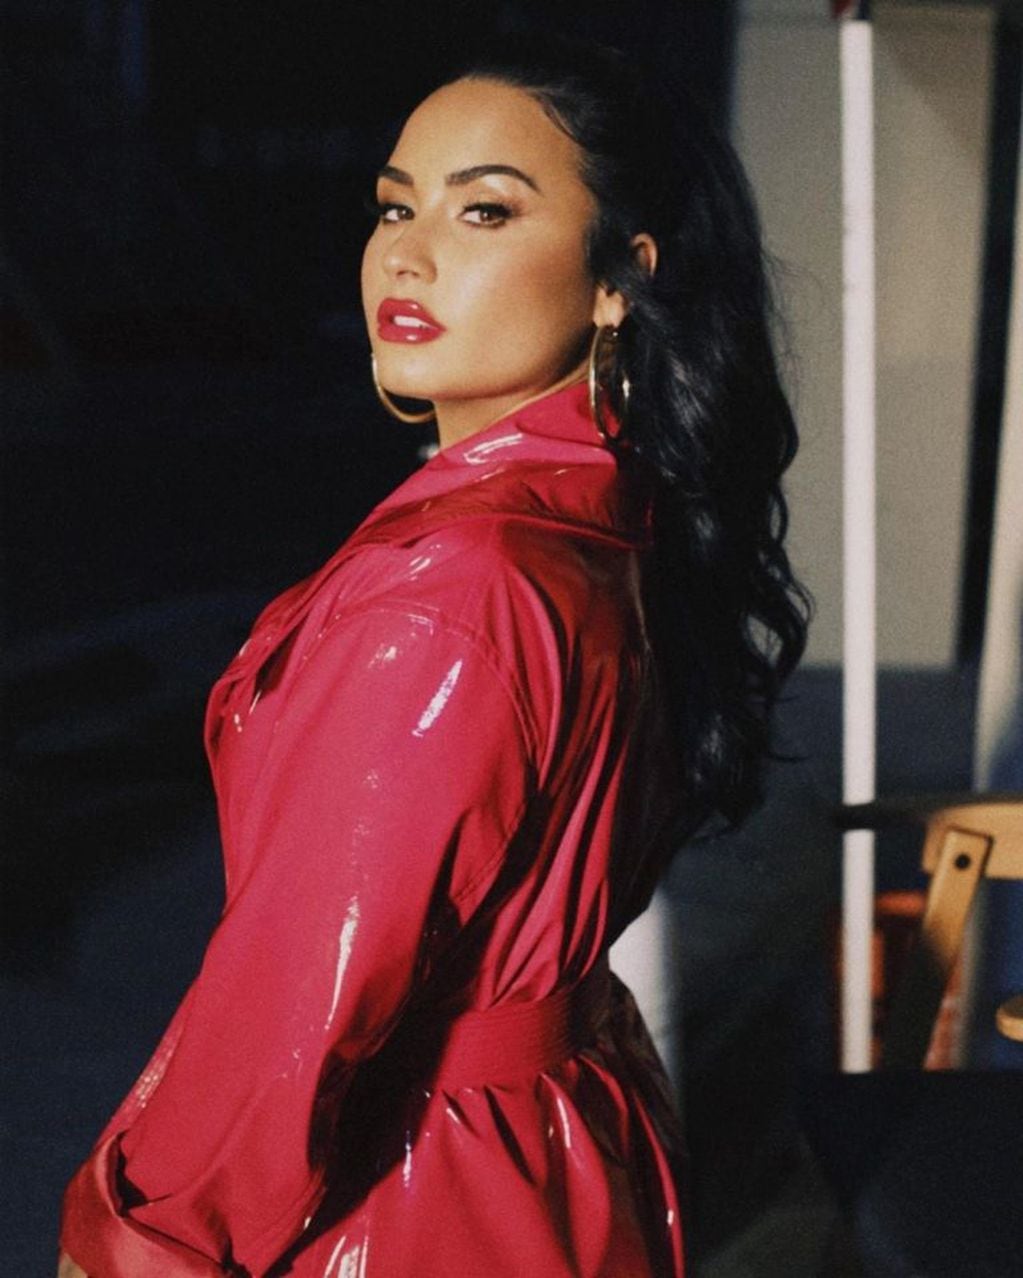 Demi Lovato luce durante casi todo el video un abrigo rojo.  (Instagram/@ddlovato)